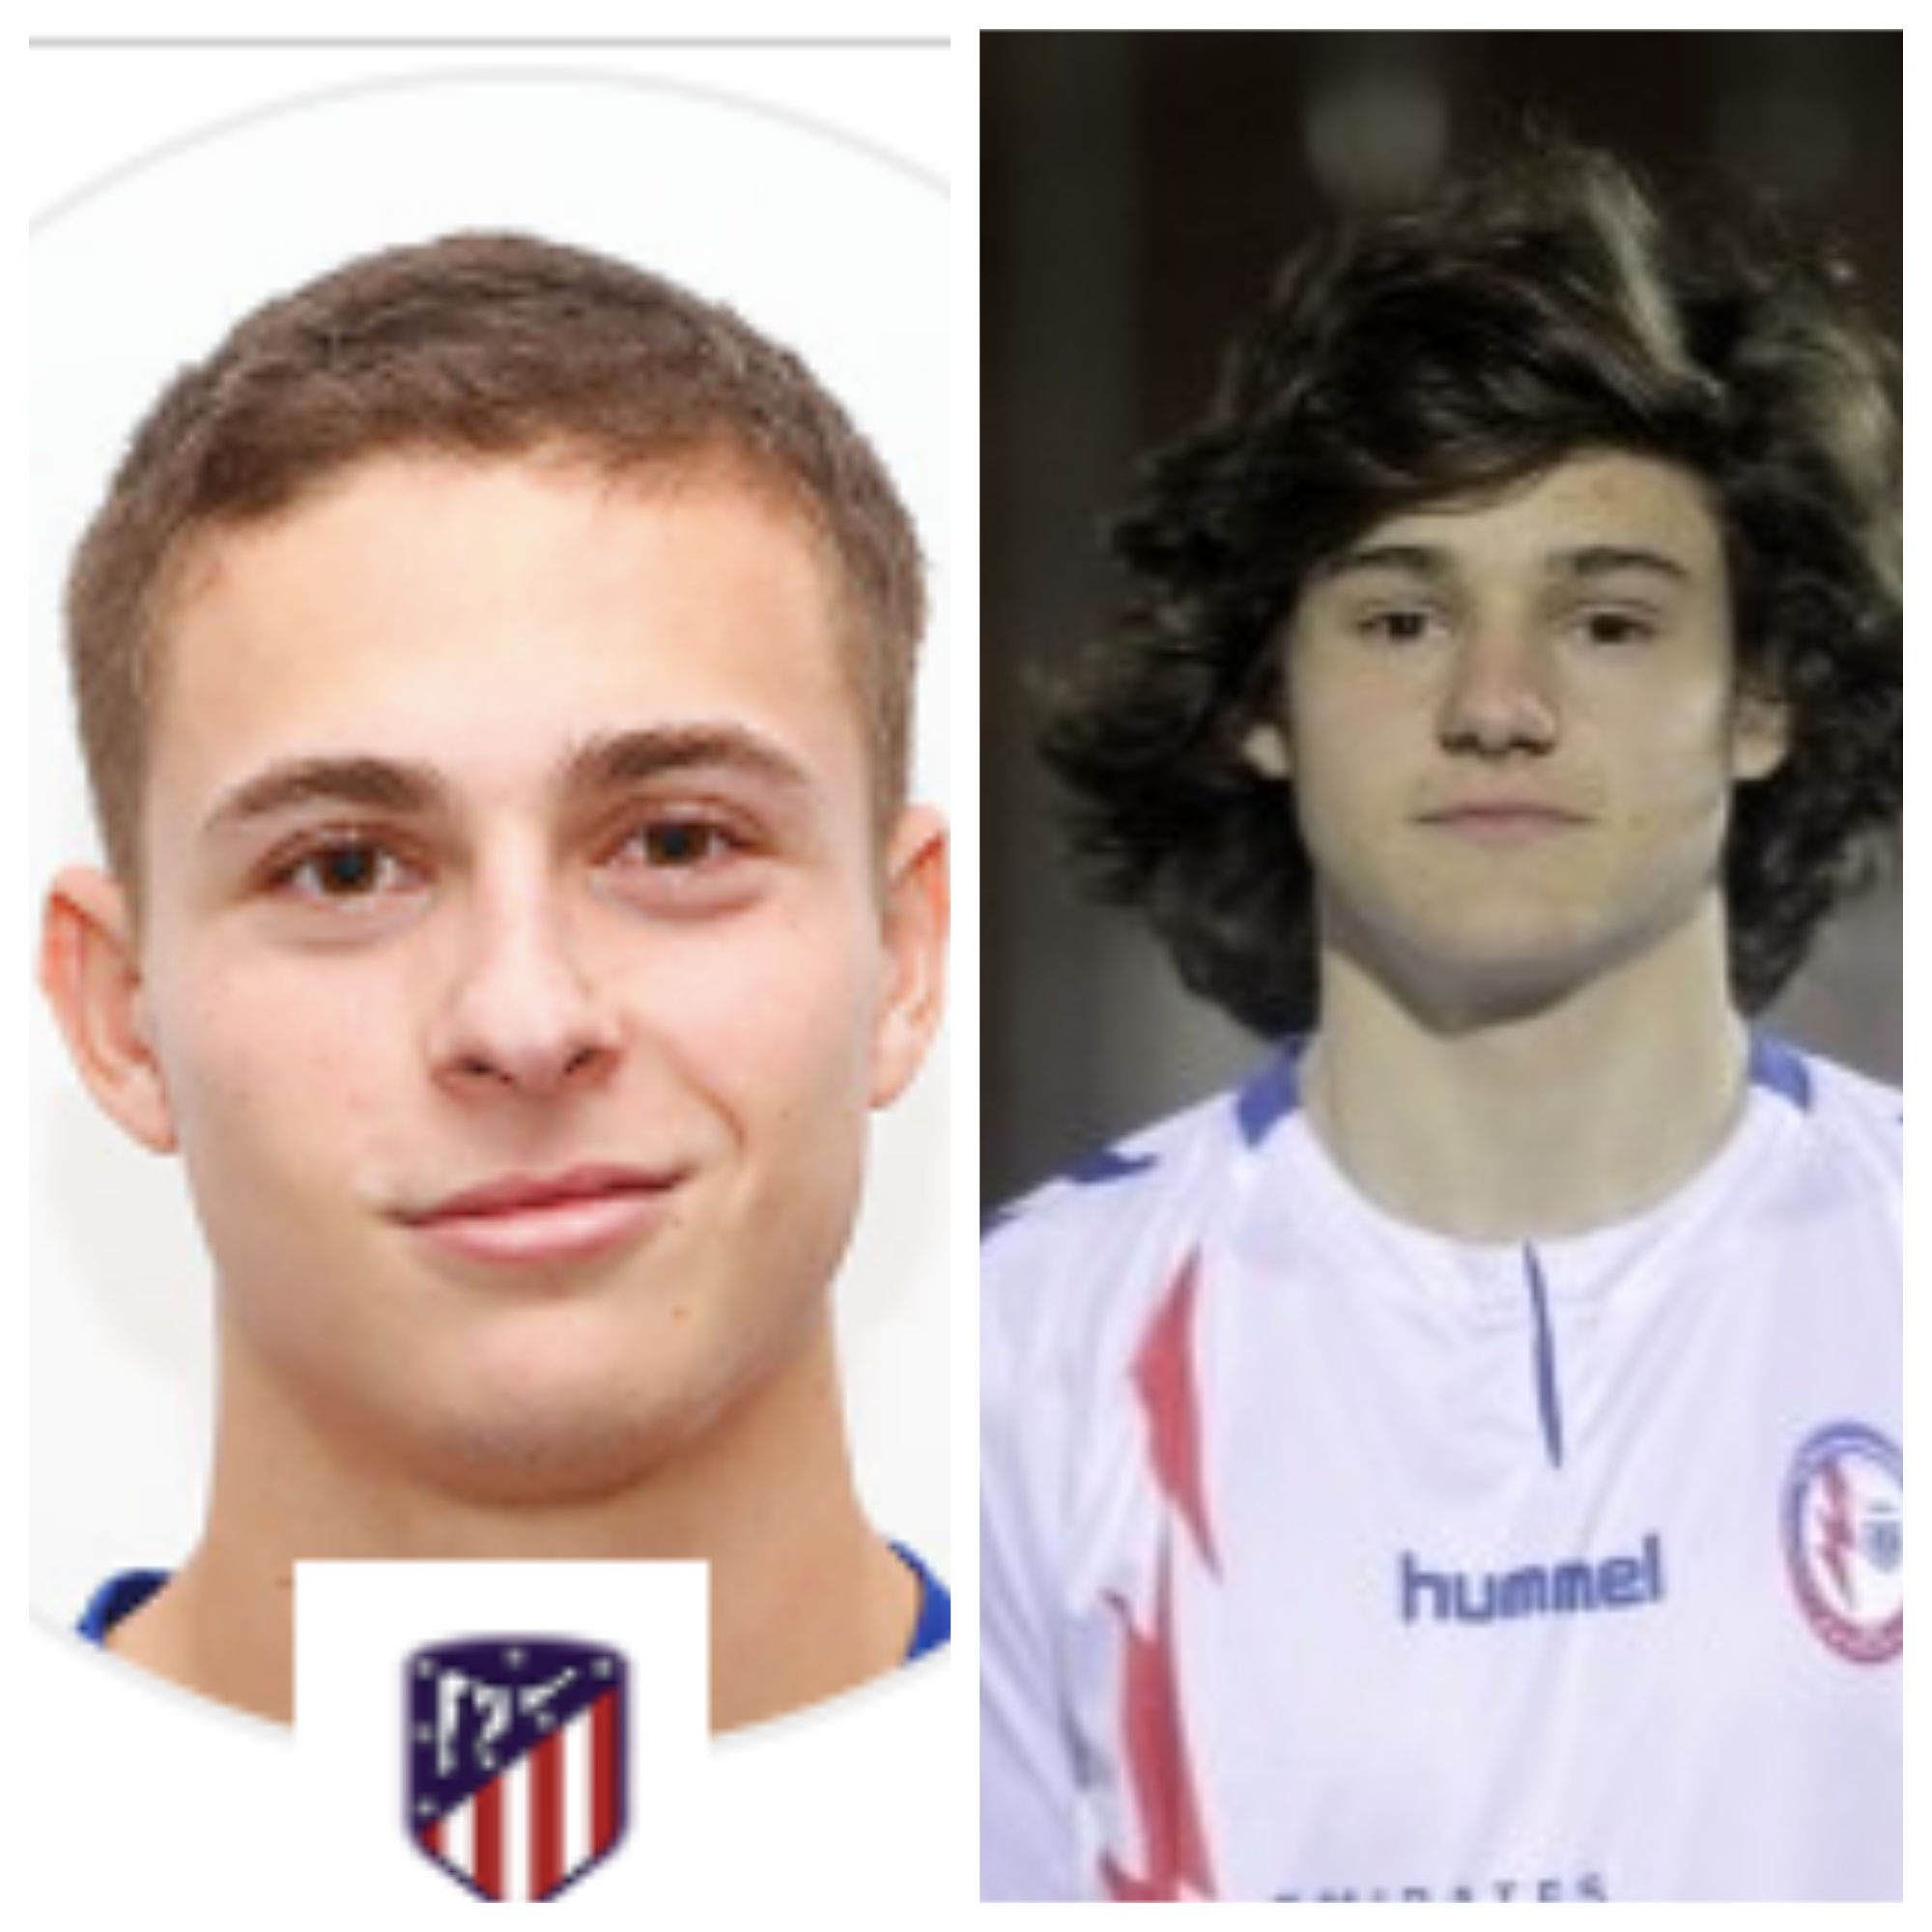 Fútbol juvenil: los jugadores de Majadahonda Del Val (Rayo) y «Rorro» (At. Madrid) alcanzan el Top 5 de la categoría